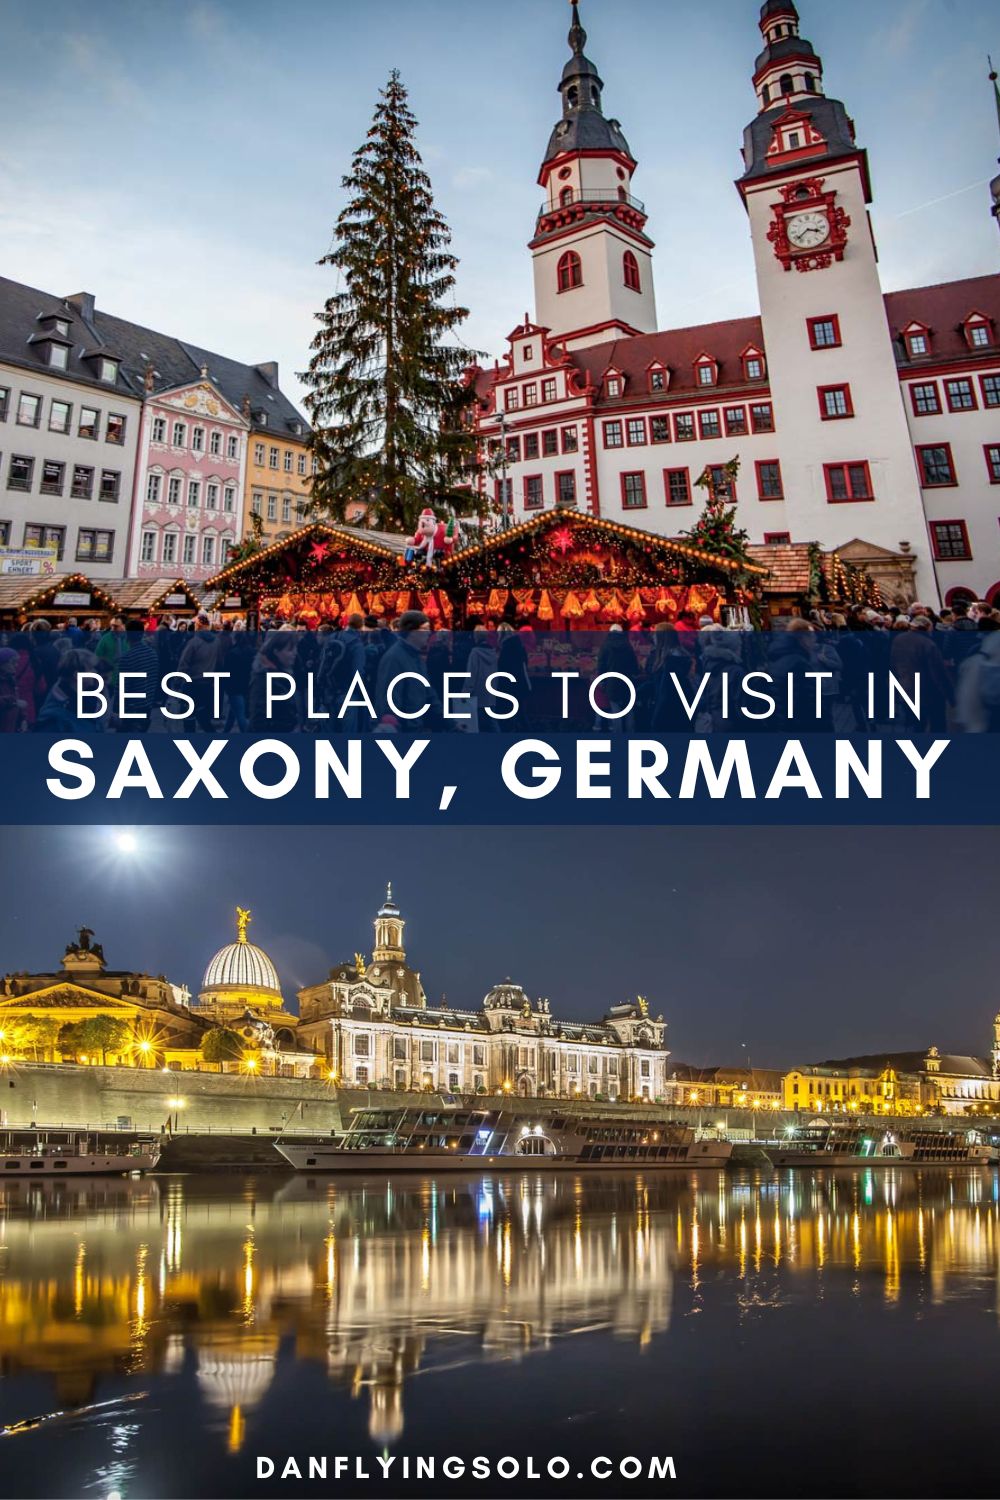 发现萨克森最好的地方参观,并从德累斯顿短途旅行,如葡萄酒庄园,宫殿、湖矿业城镇和森林公园。